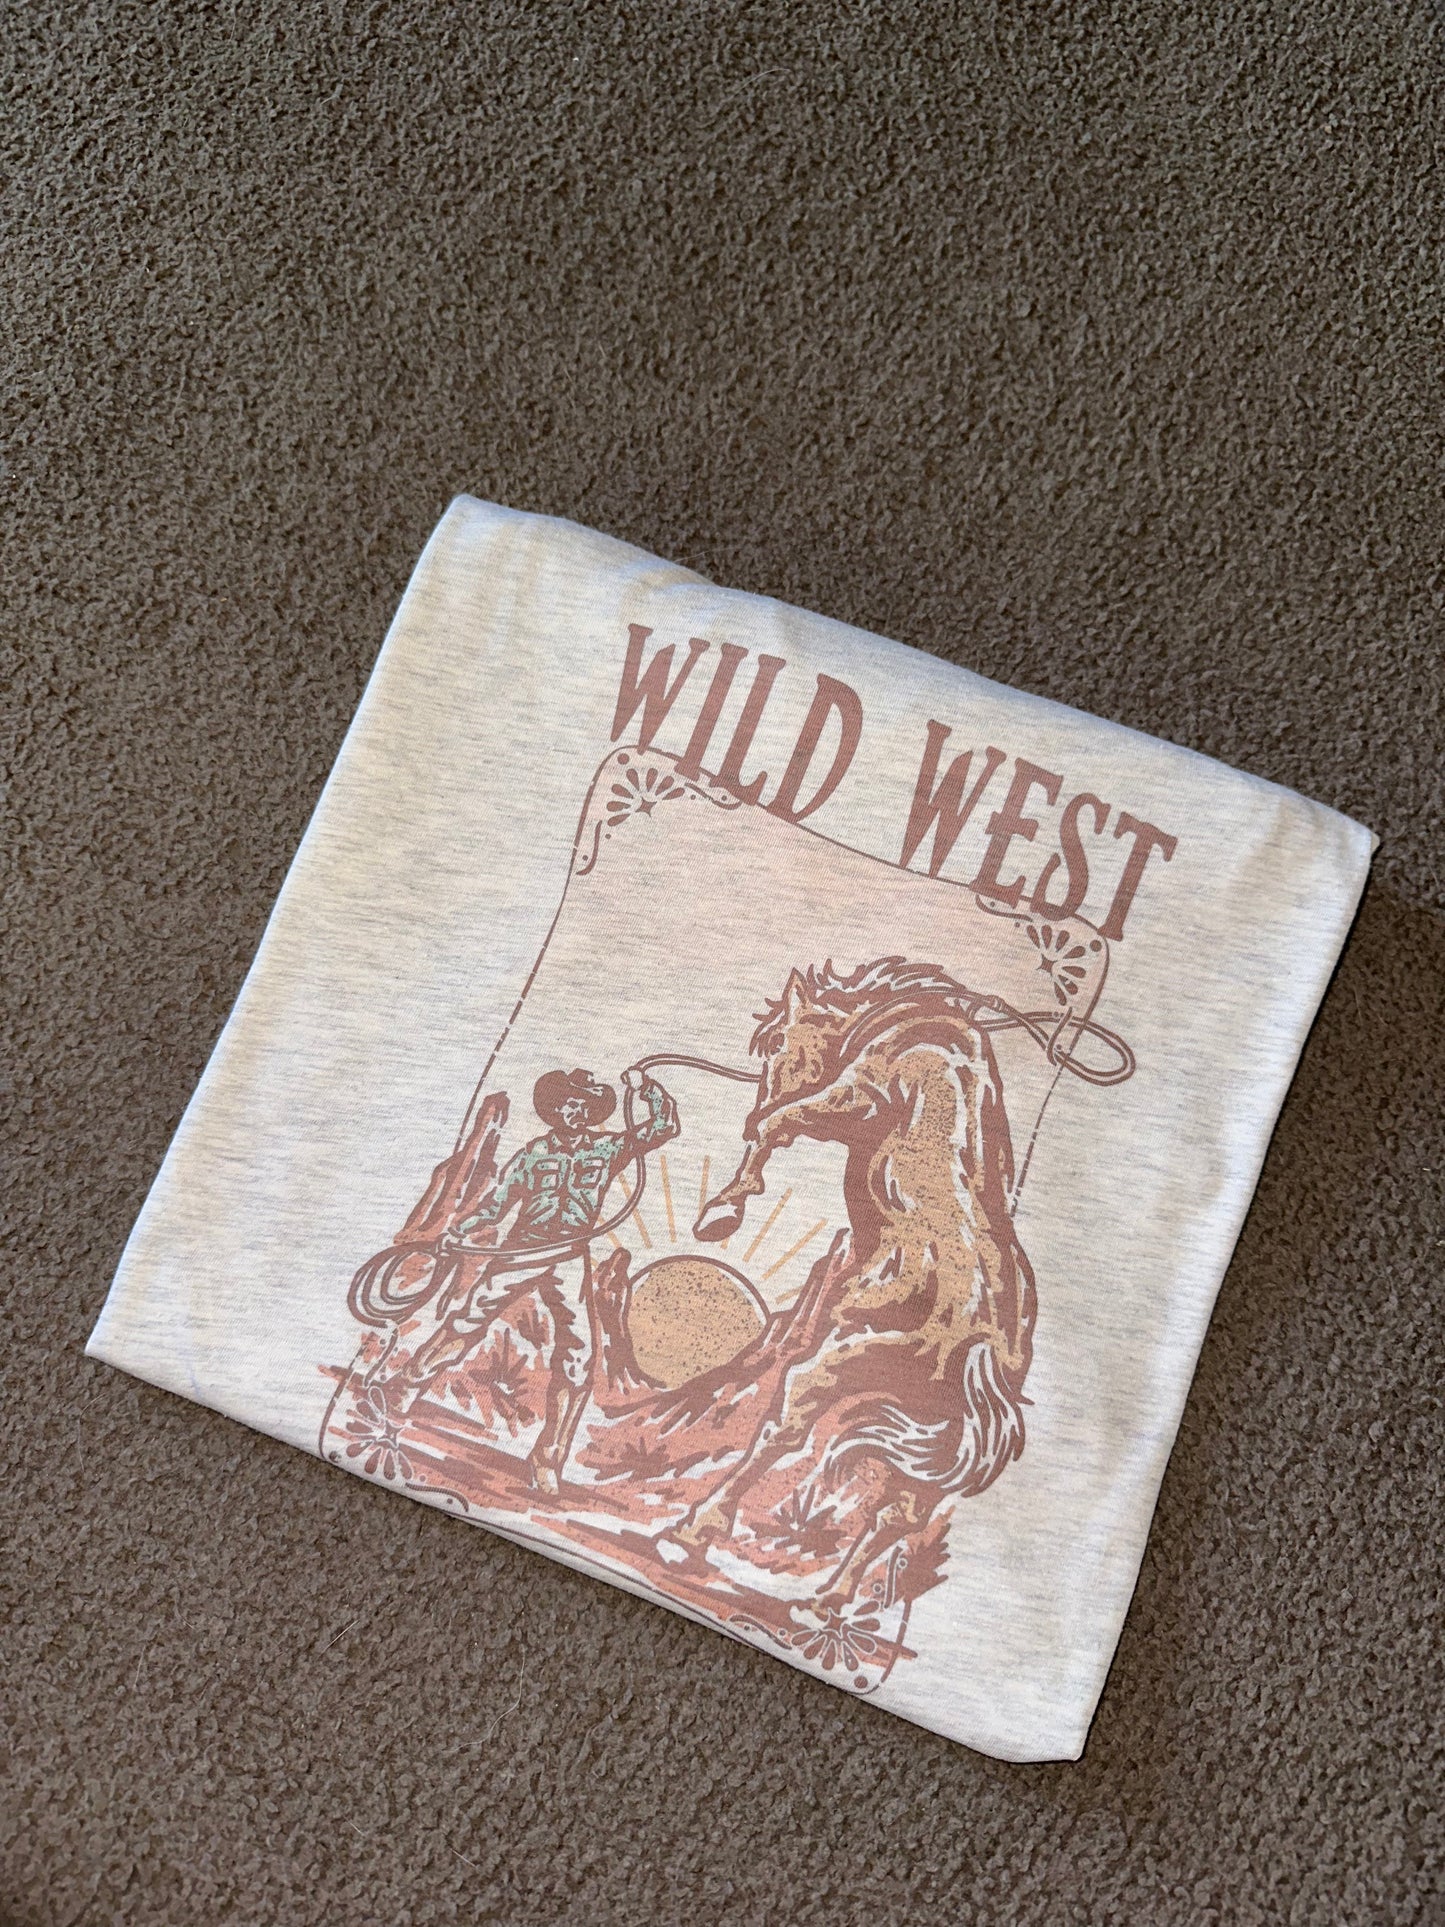 Wild west cowboy tee